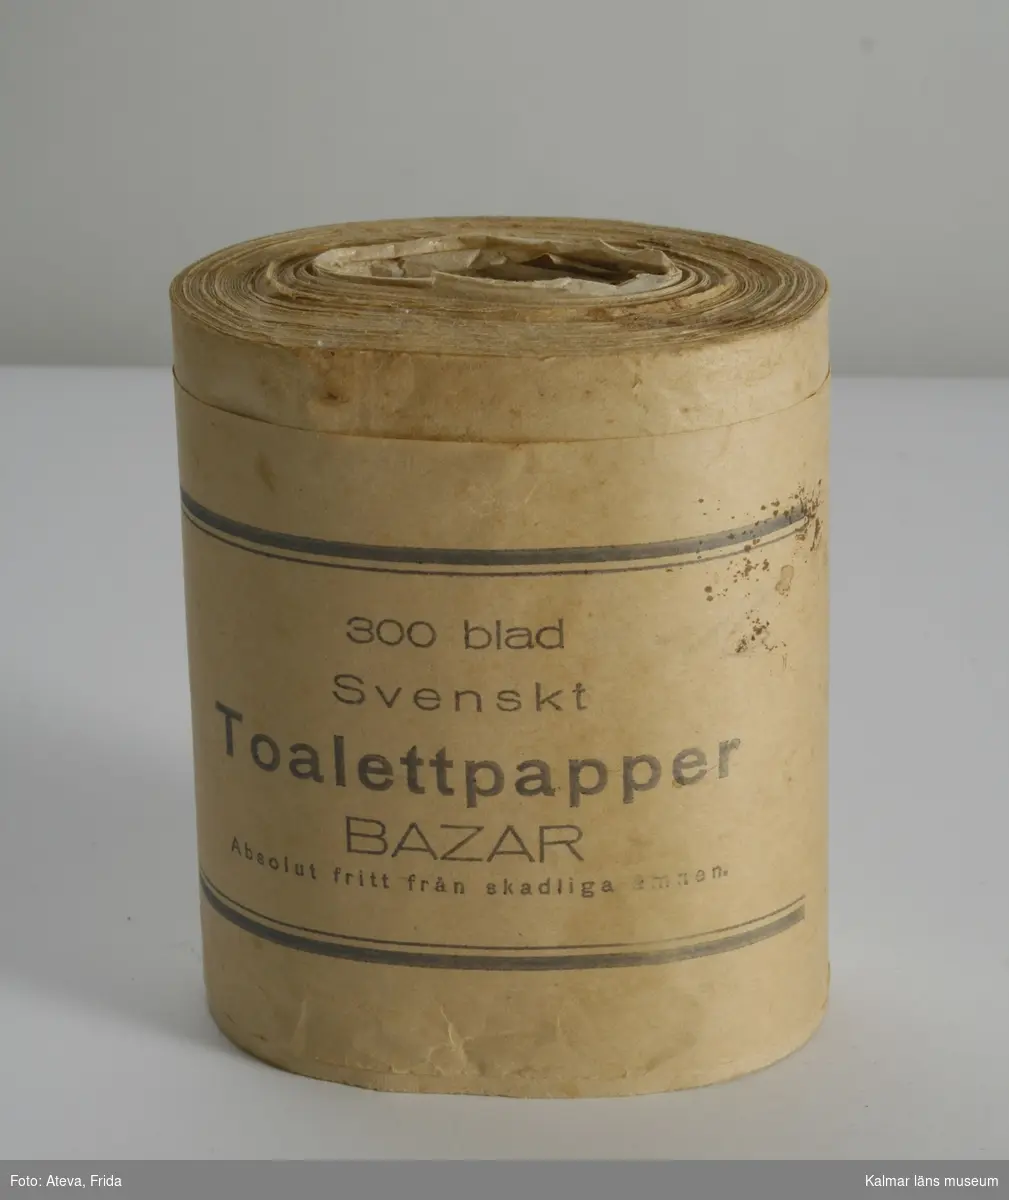 KLM 44780, Toalettpapper, av papper. En rulle toalettpapper. På omslagspappret texten: 300 blad Svenskt Toalettpapper Bazar Absolut fritt från skadliga ämnen.